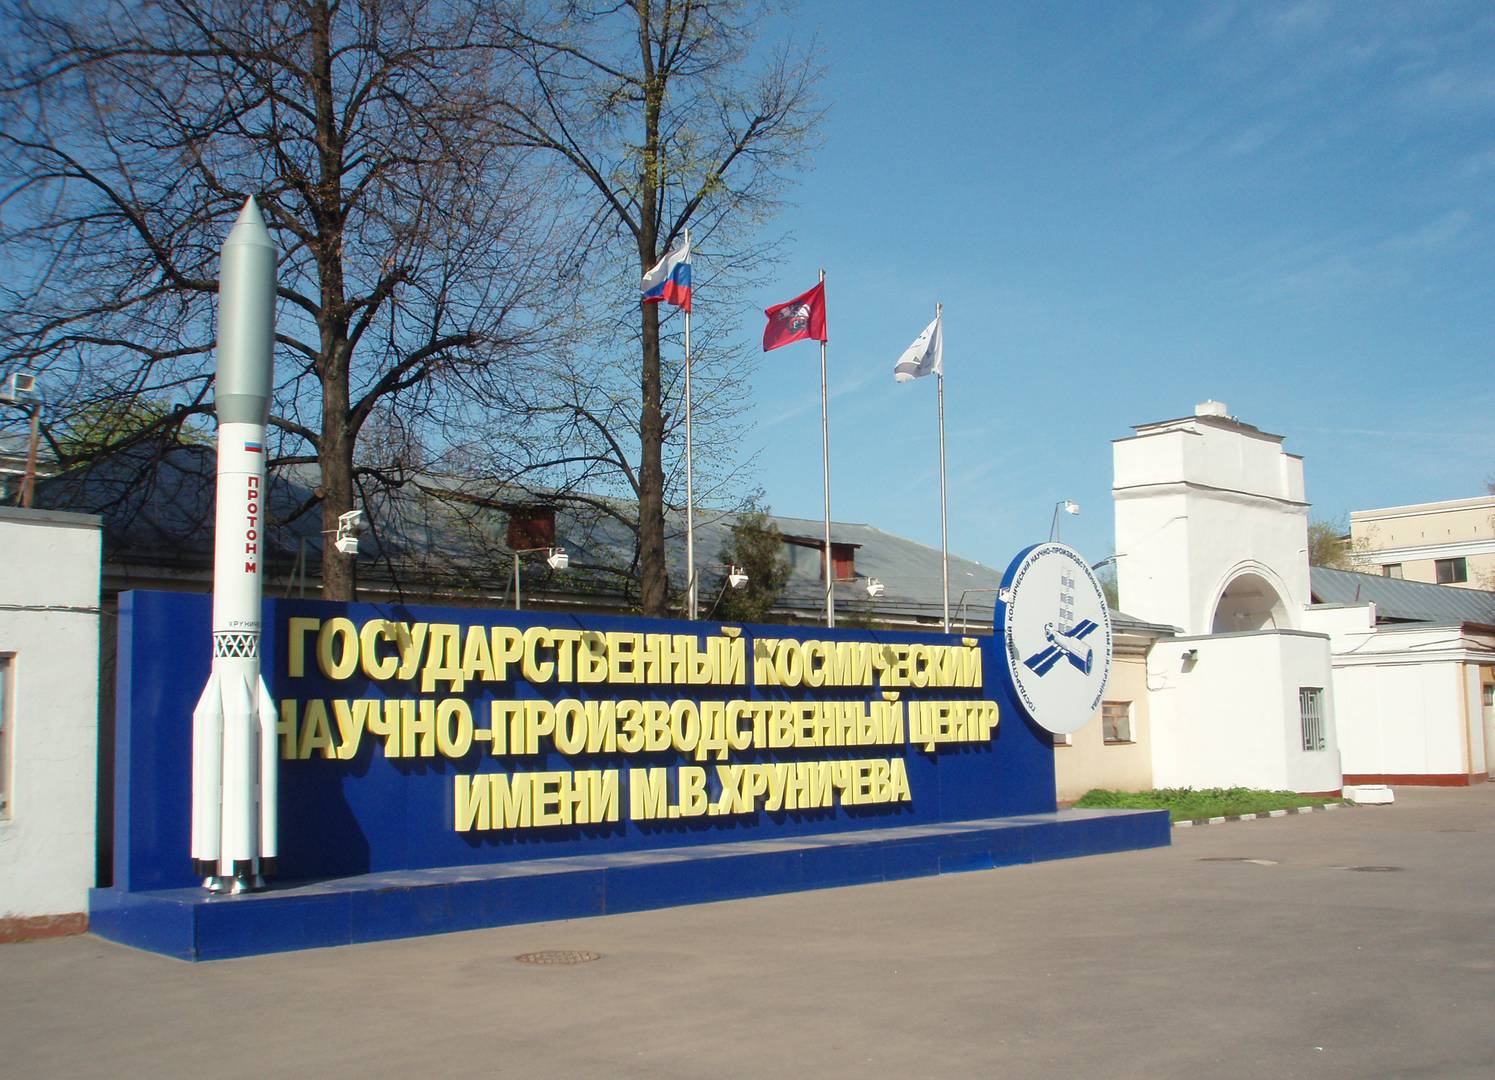 Государственный космический научно-производственный центр имени М. В. Хруничева